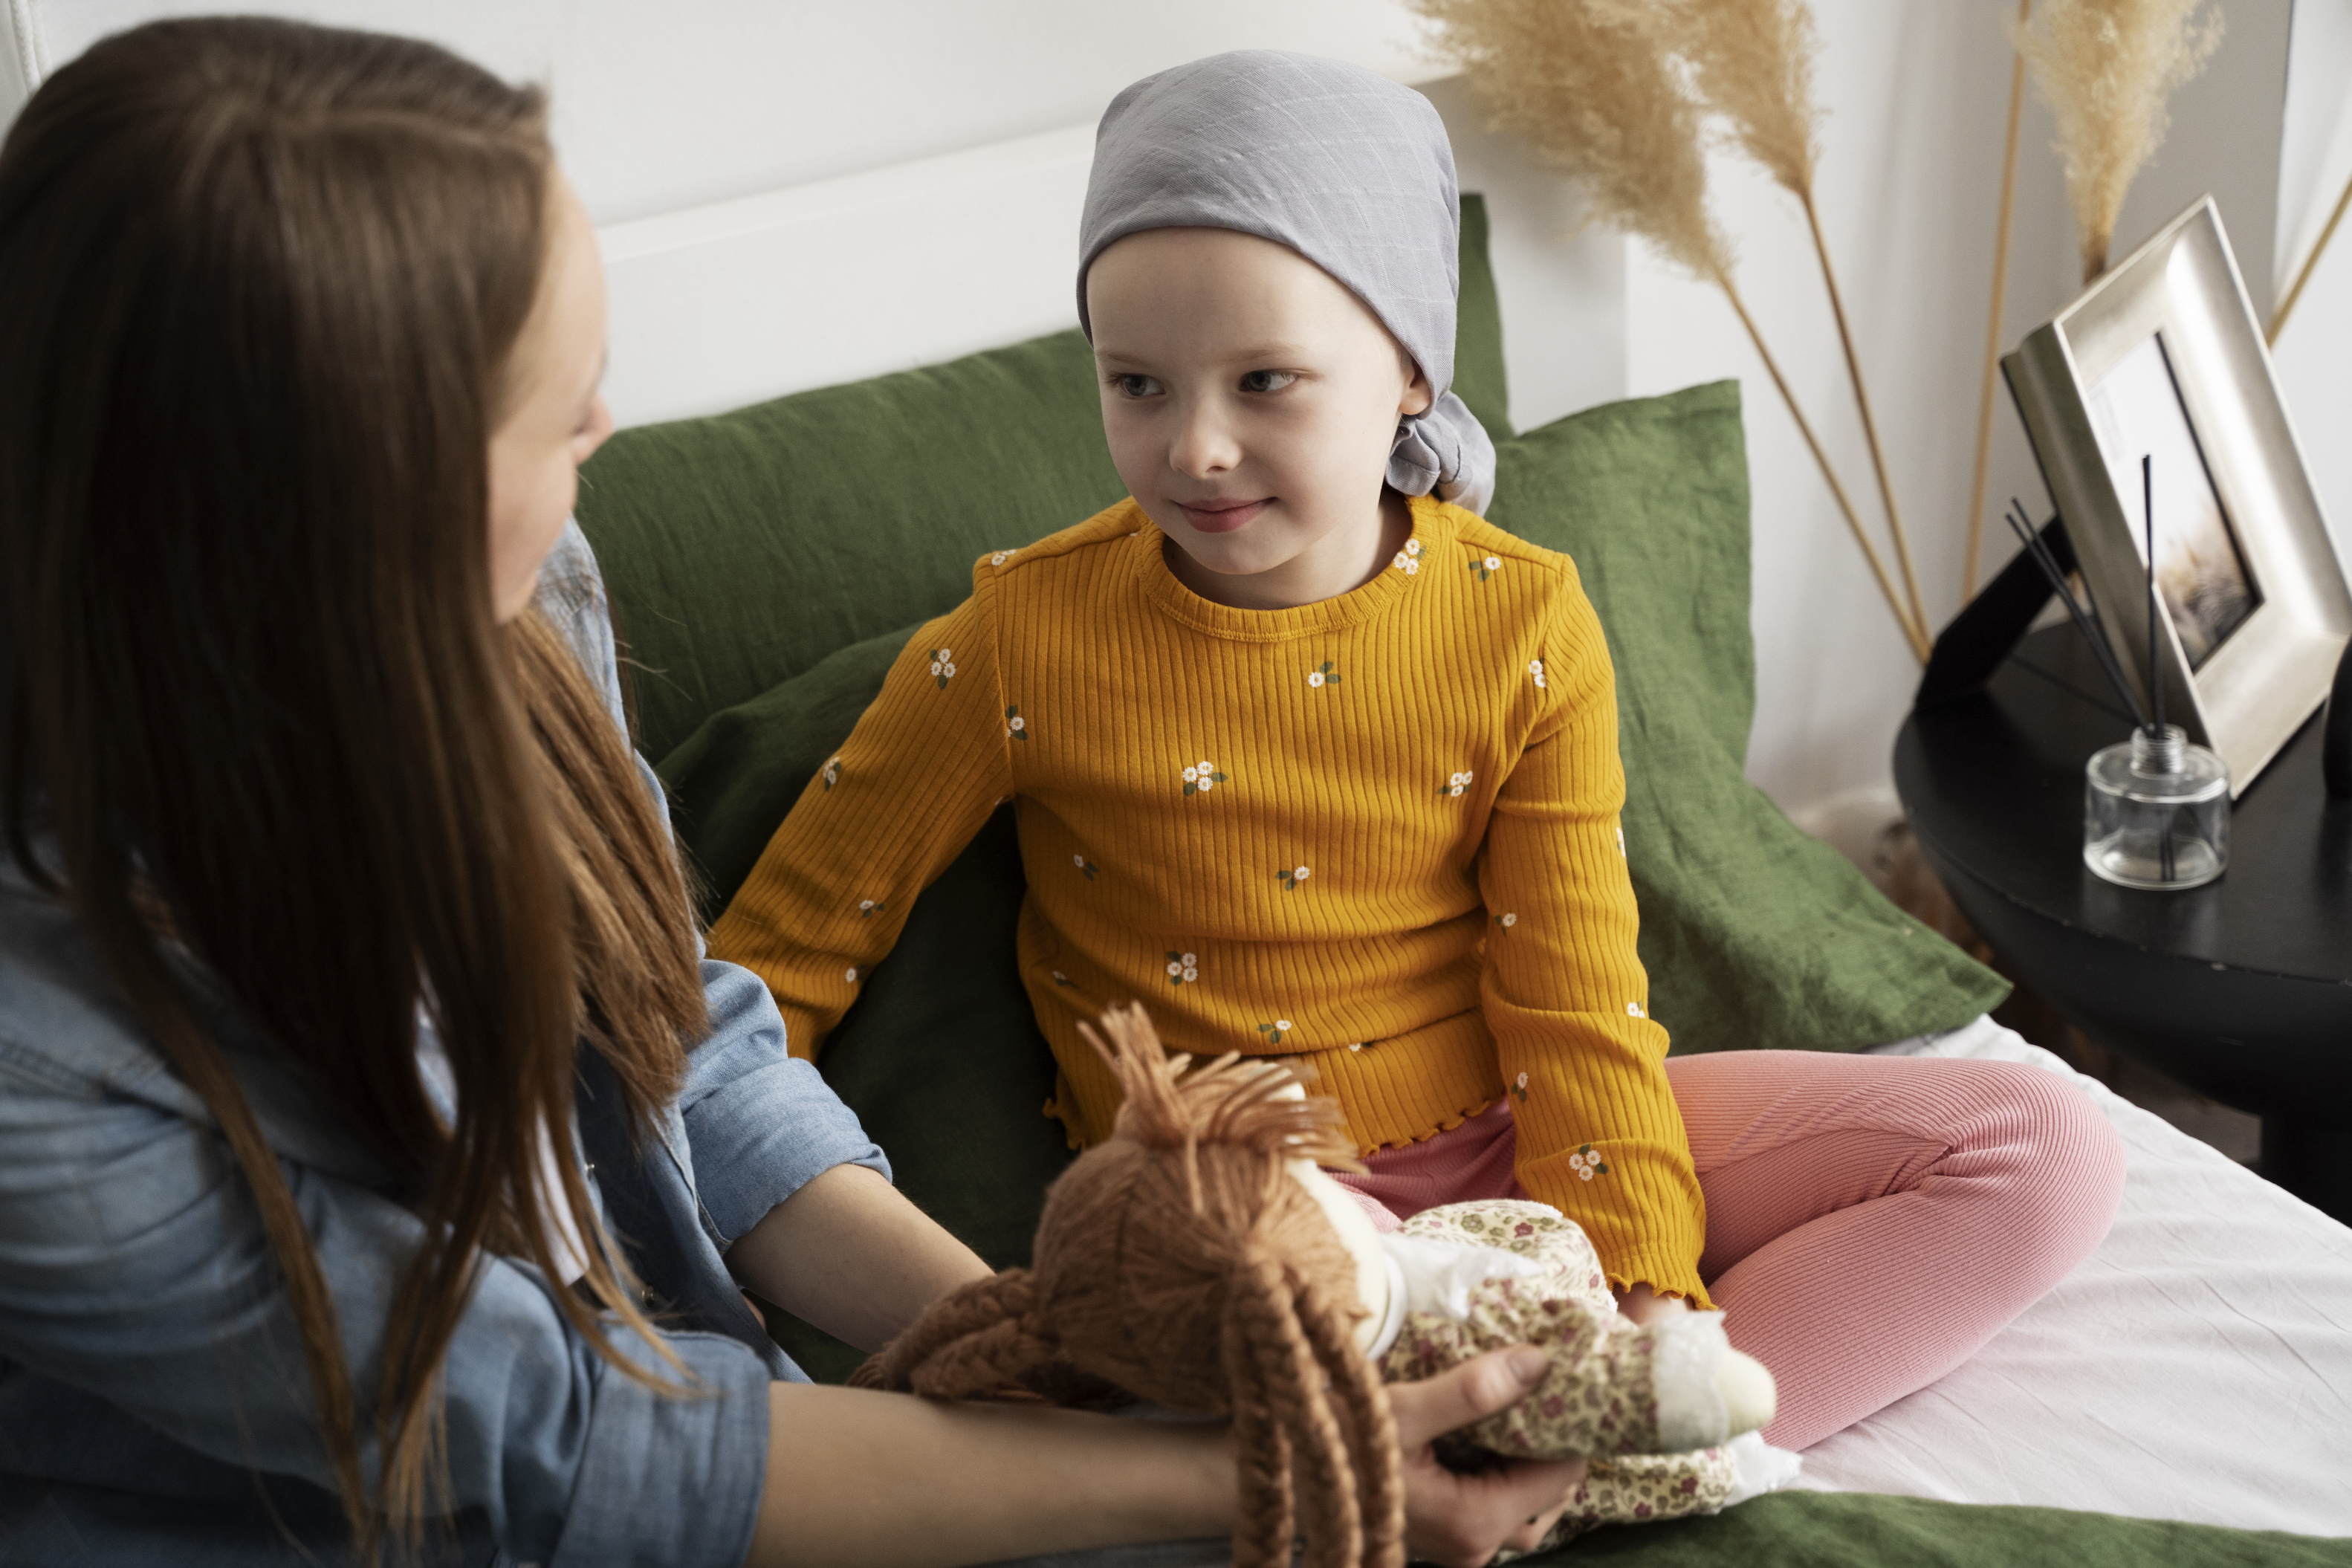 Cáncer en niños: reconozca los síntomas tempranos para una atención oportuna